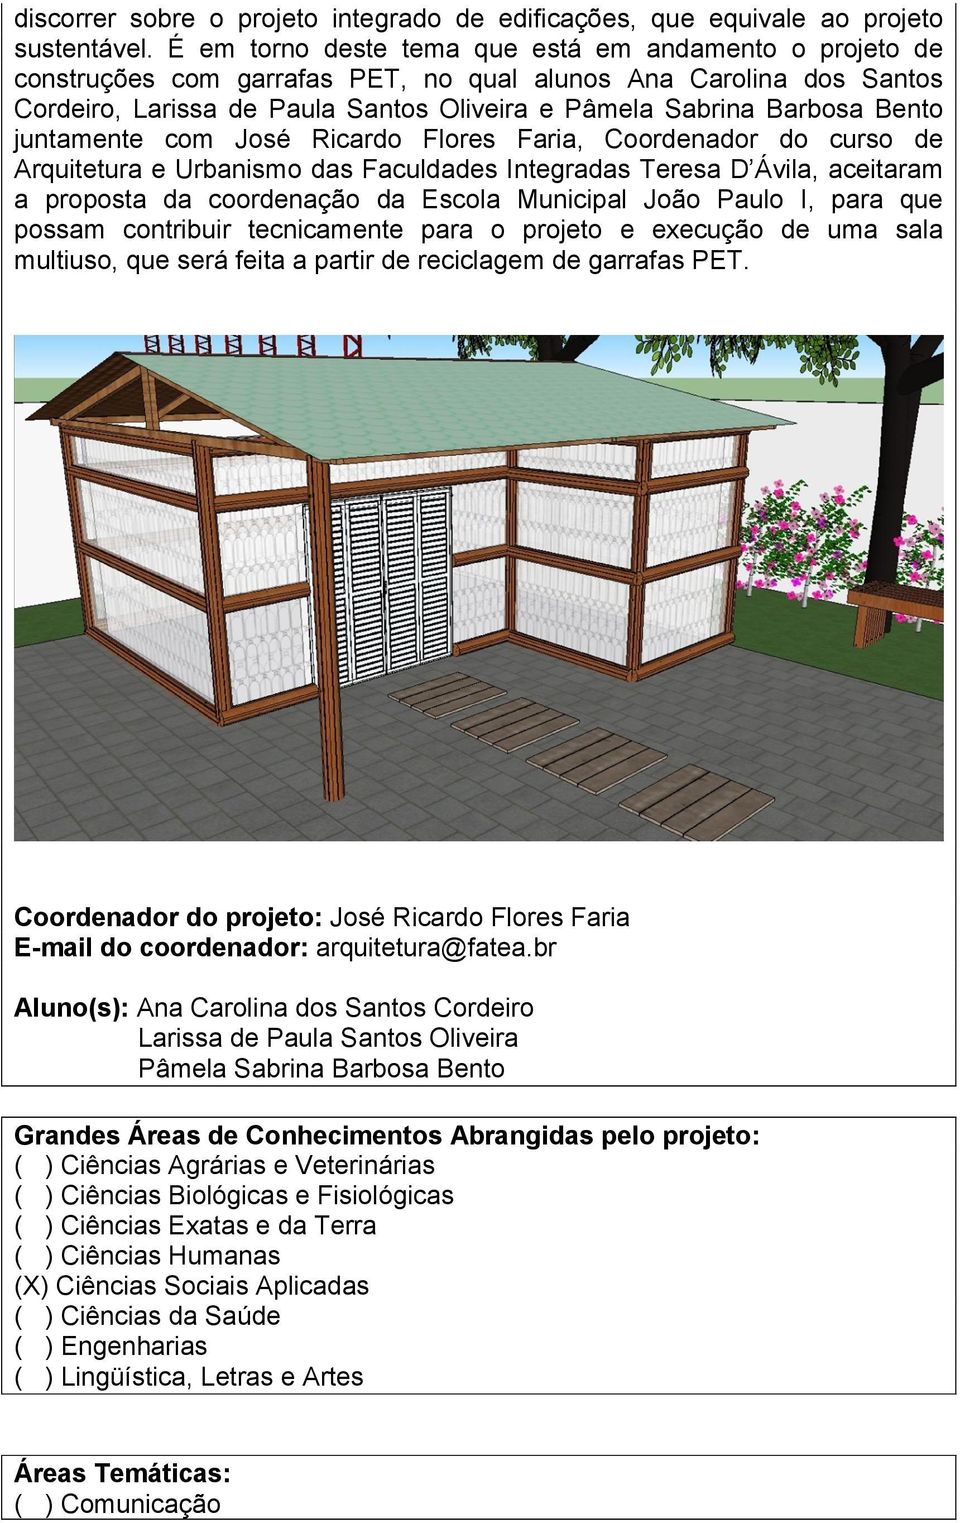 juntamente com José Ricardo Flores Faria, Coordenador do curso de Arquitetura e Urbanismo das Faculdades Integradas Teresa D Ávila, aceitaram a proposta da coordenação da Escola Municipal João Paulo